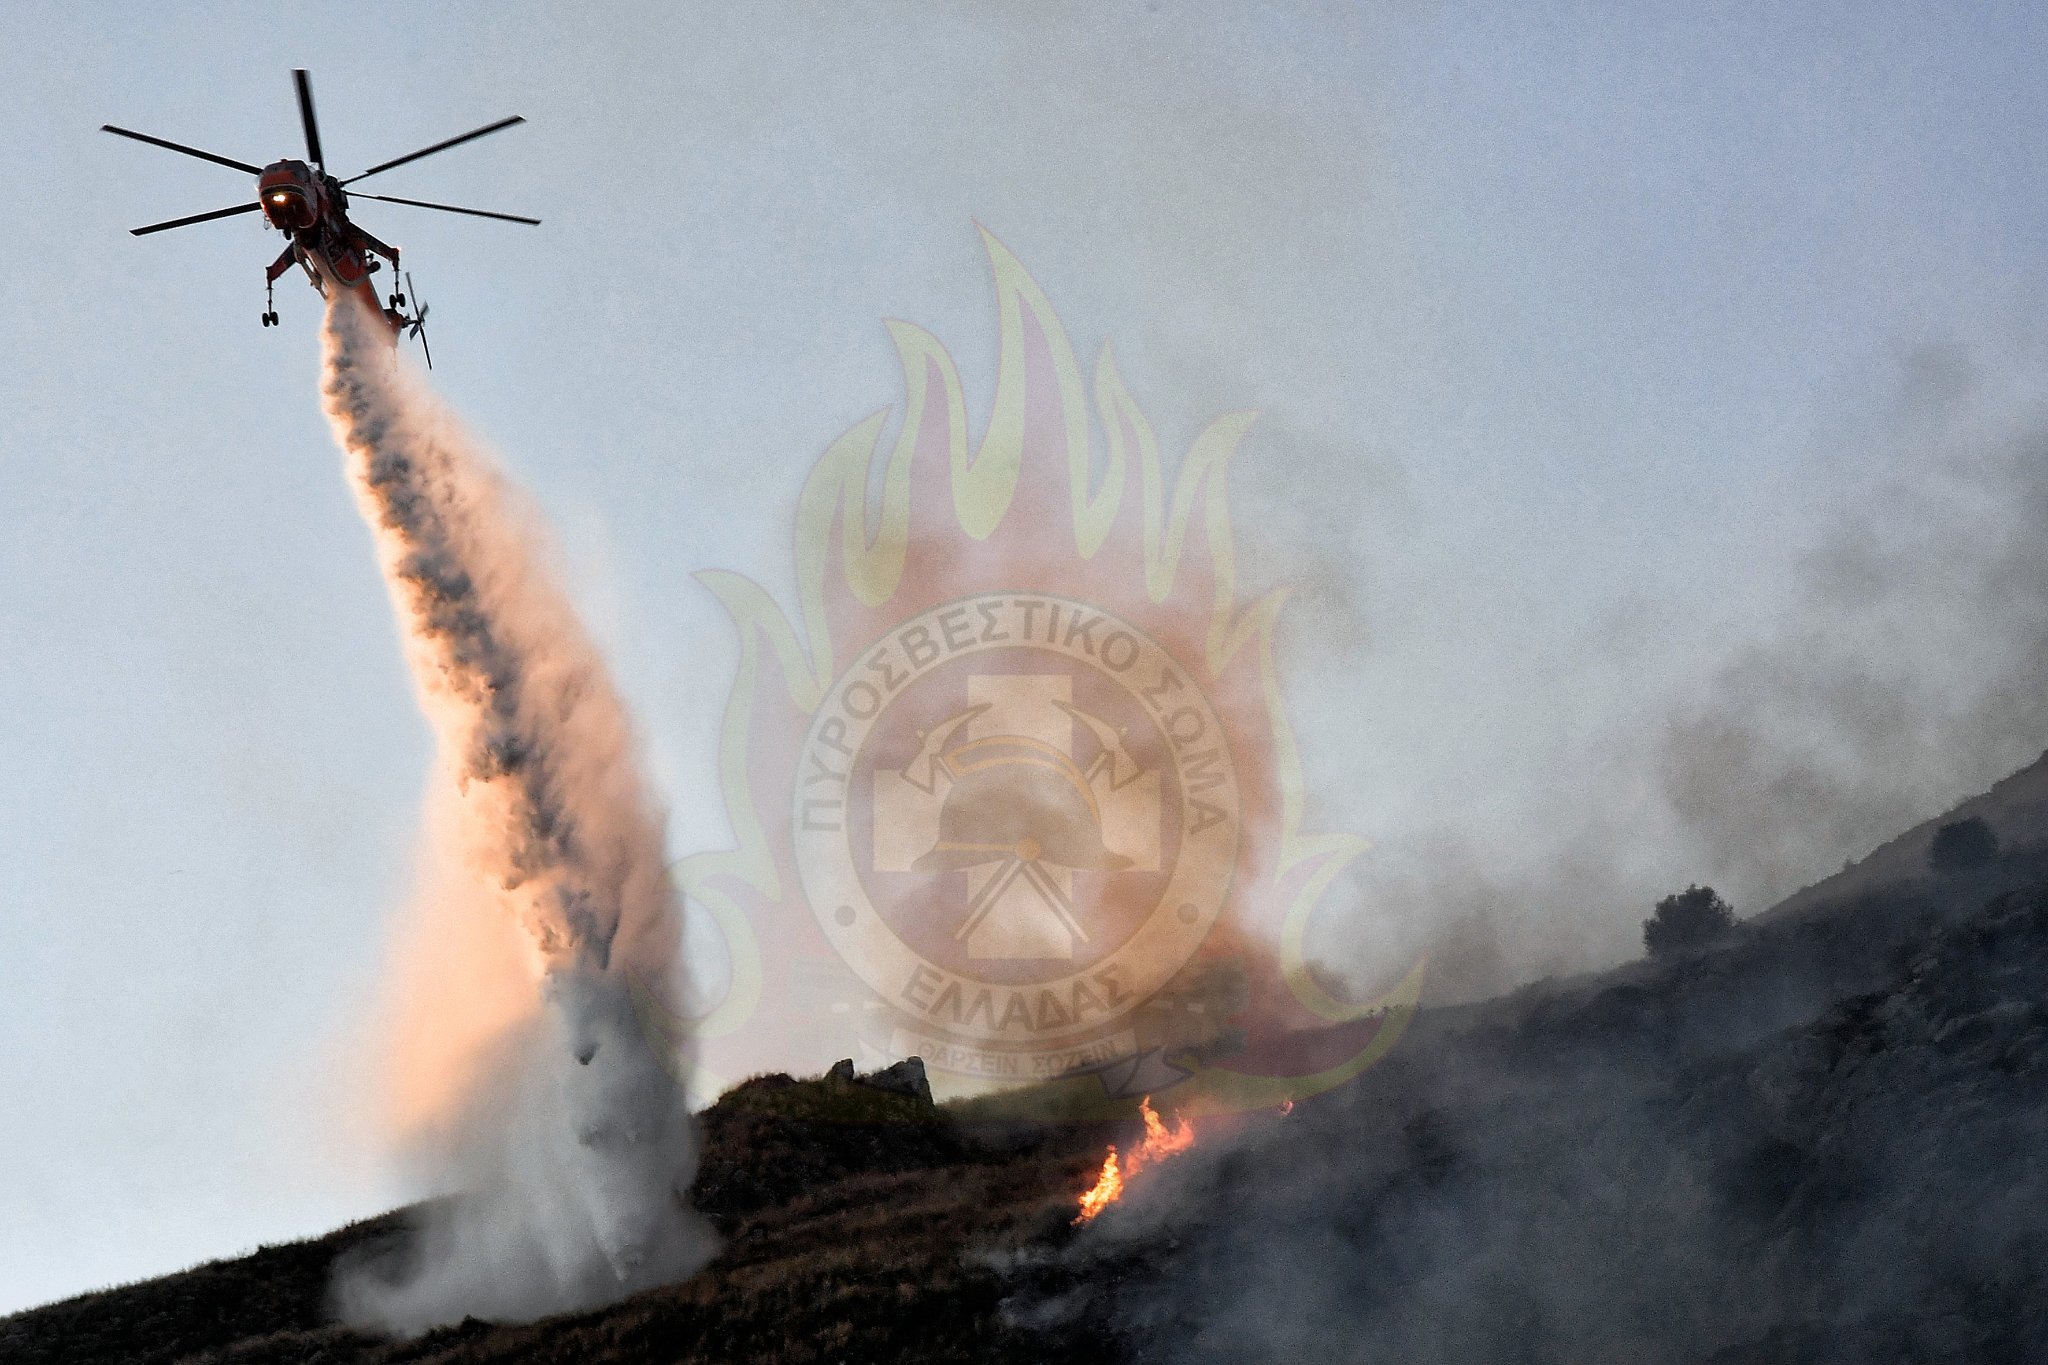 Πελοπόννησος: Σε “πορτοκαλί συναγερμό” για πυρκαγιές η μισή Περιφέρεια